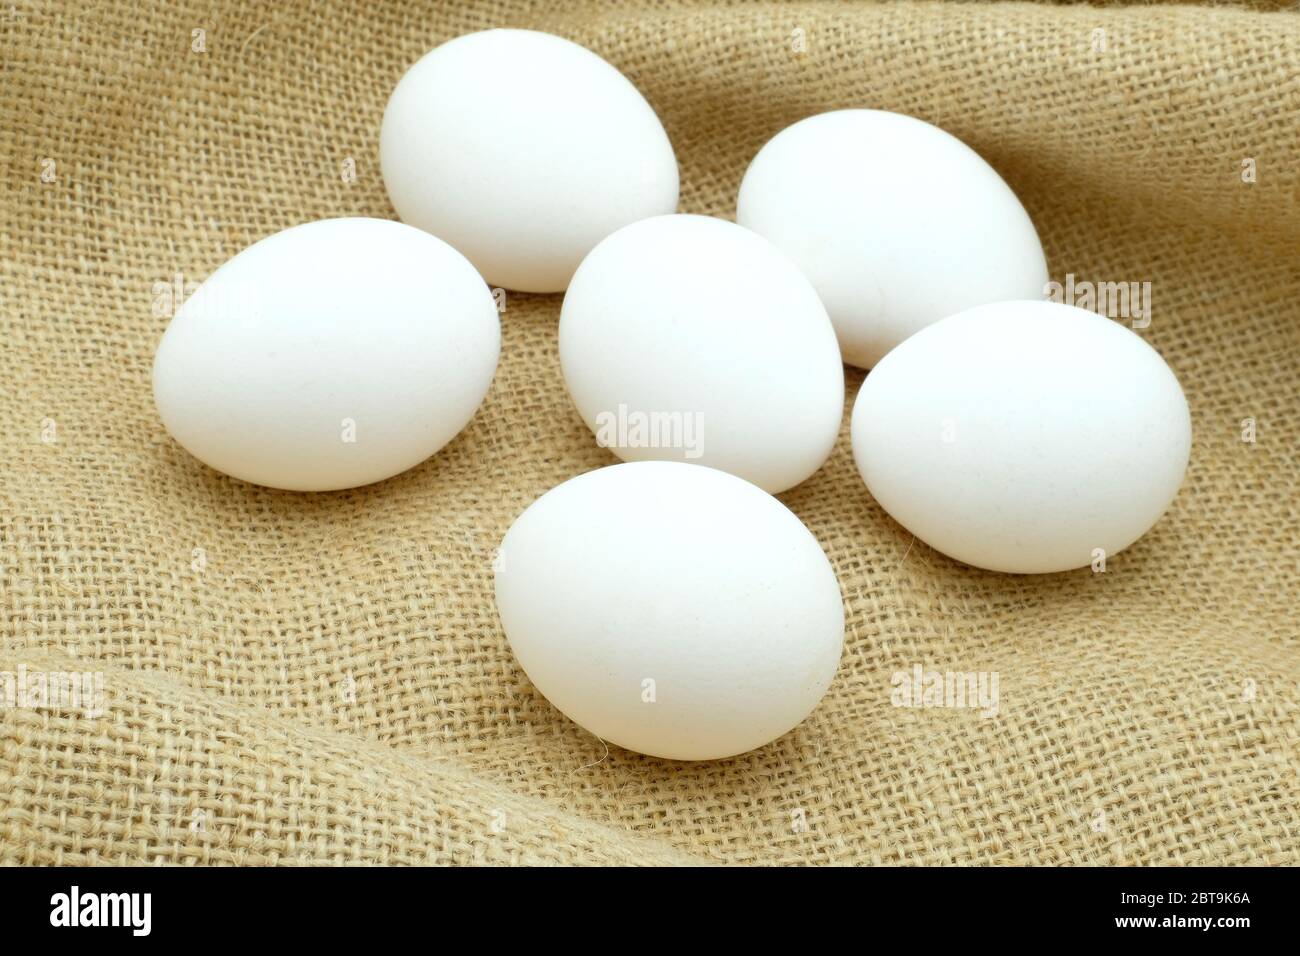 Media docena de huevos blancos de gama libre sentados sobre tela de hessiana Foto de stock